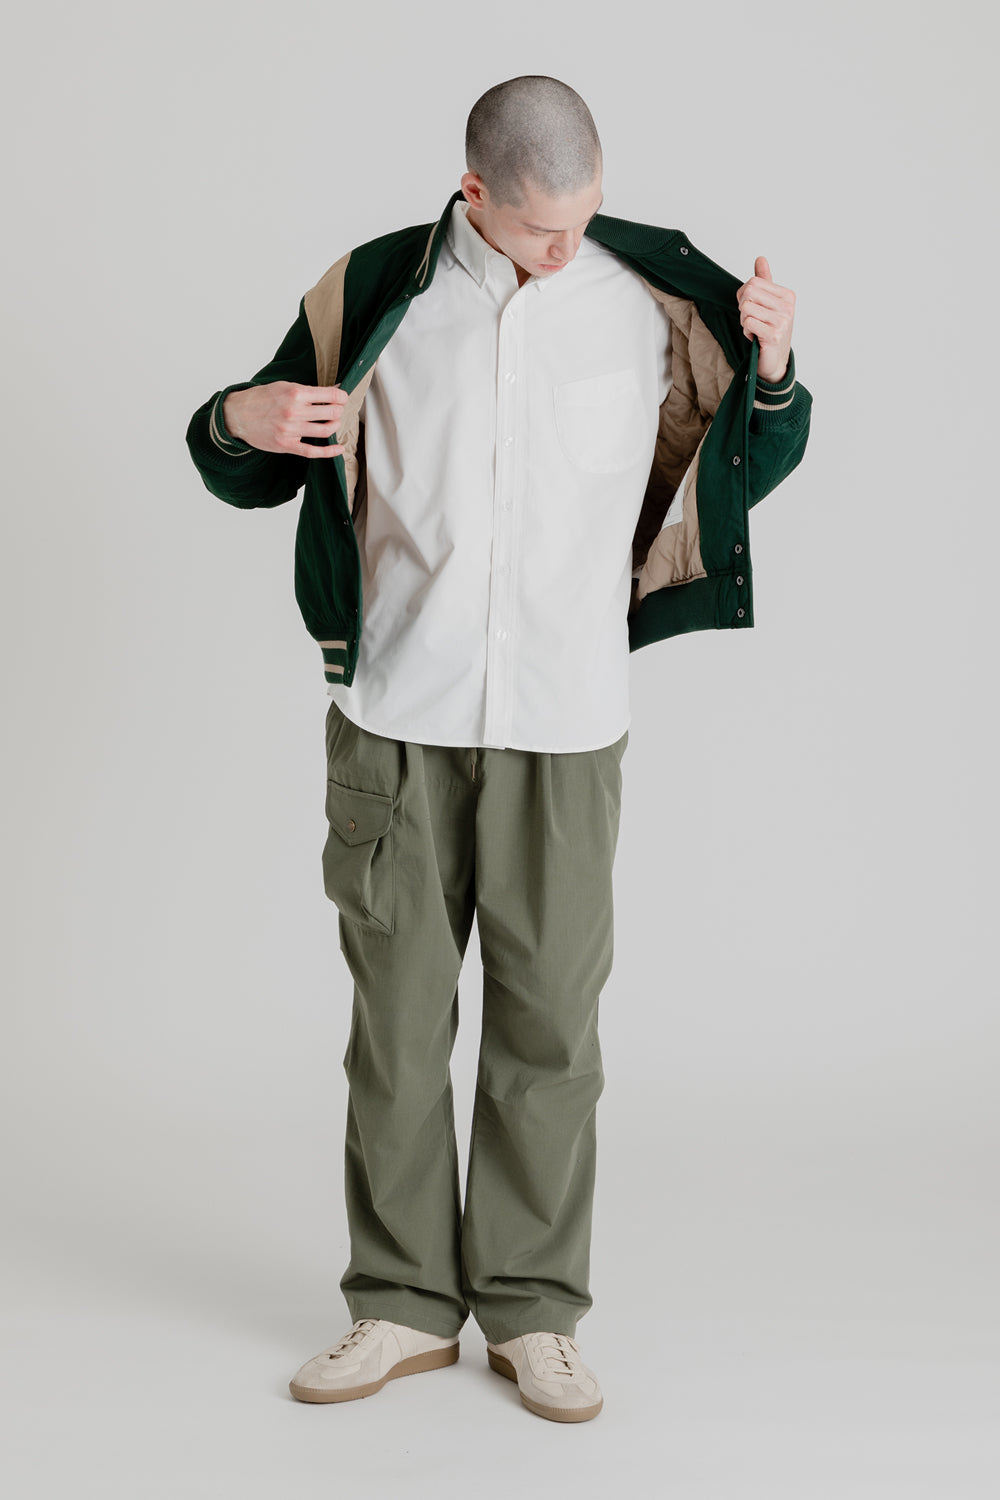 Frizmworks Mild Varsity Jacket in Dark Green